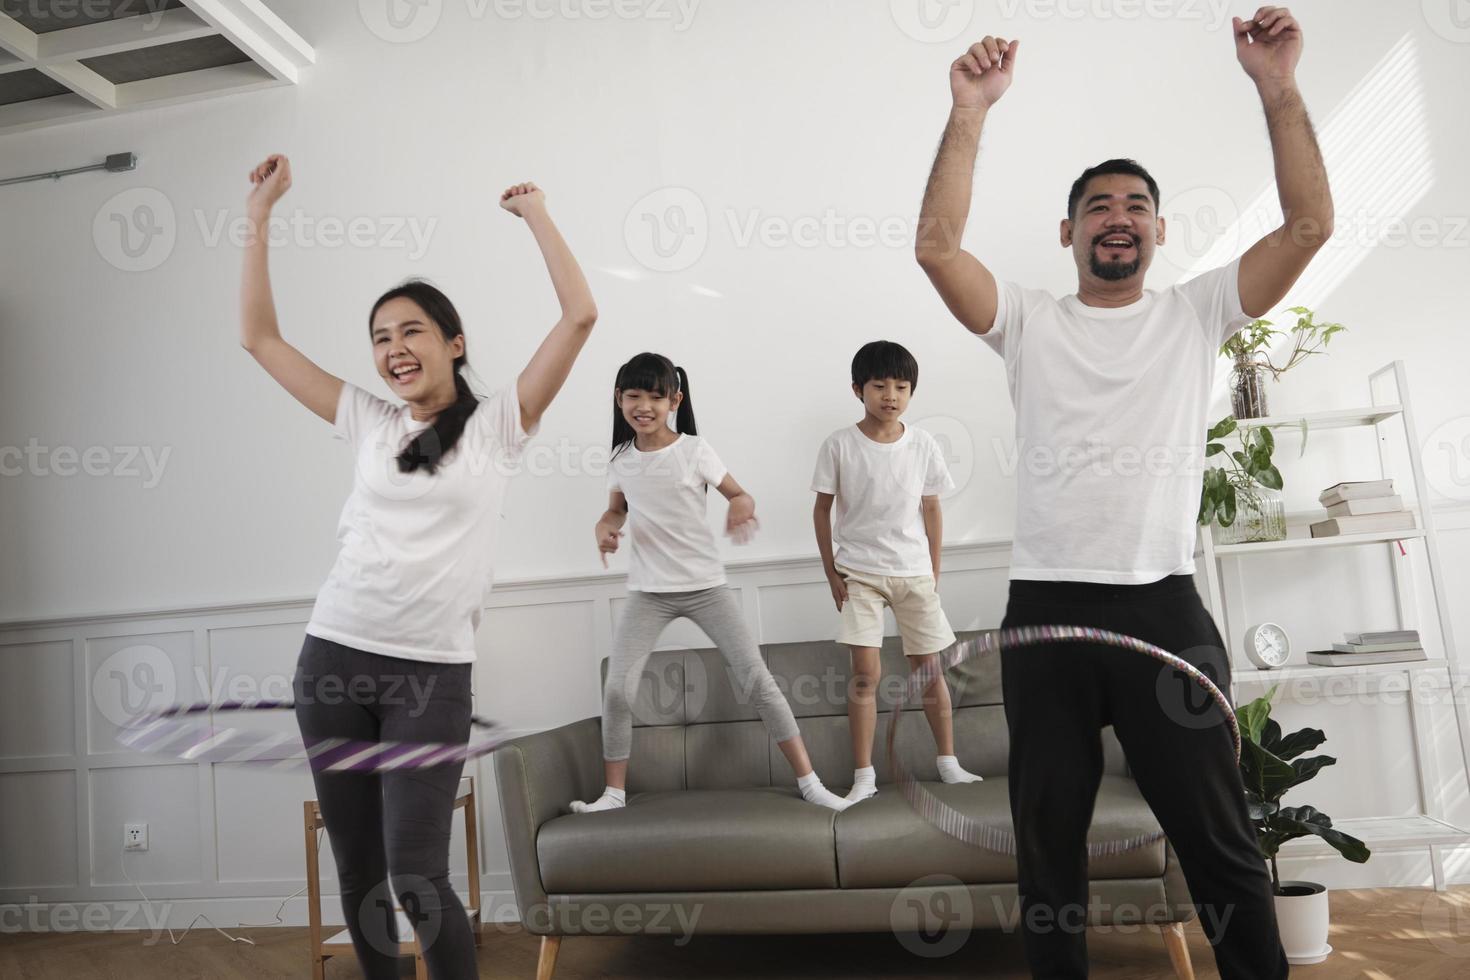 happy wellness asian thai family, eltern und kinder haben spaß beim gemeinsamen hula-hoop-spielen, fitnesstraining und gesunder übung im weißen wohnzimmer, häuslichem lebensstil und wochenendaktivitäten. foto